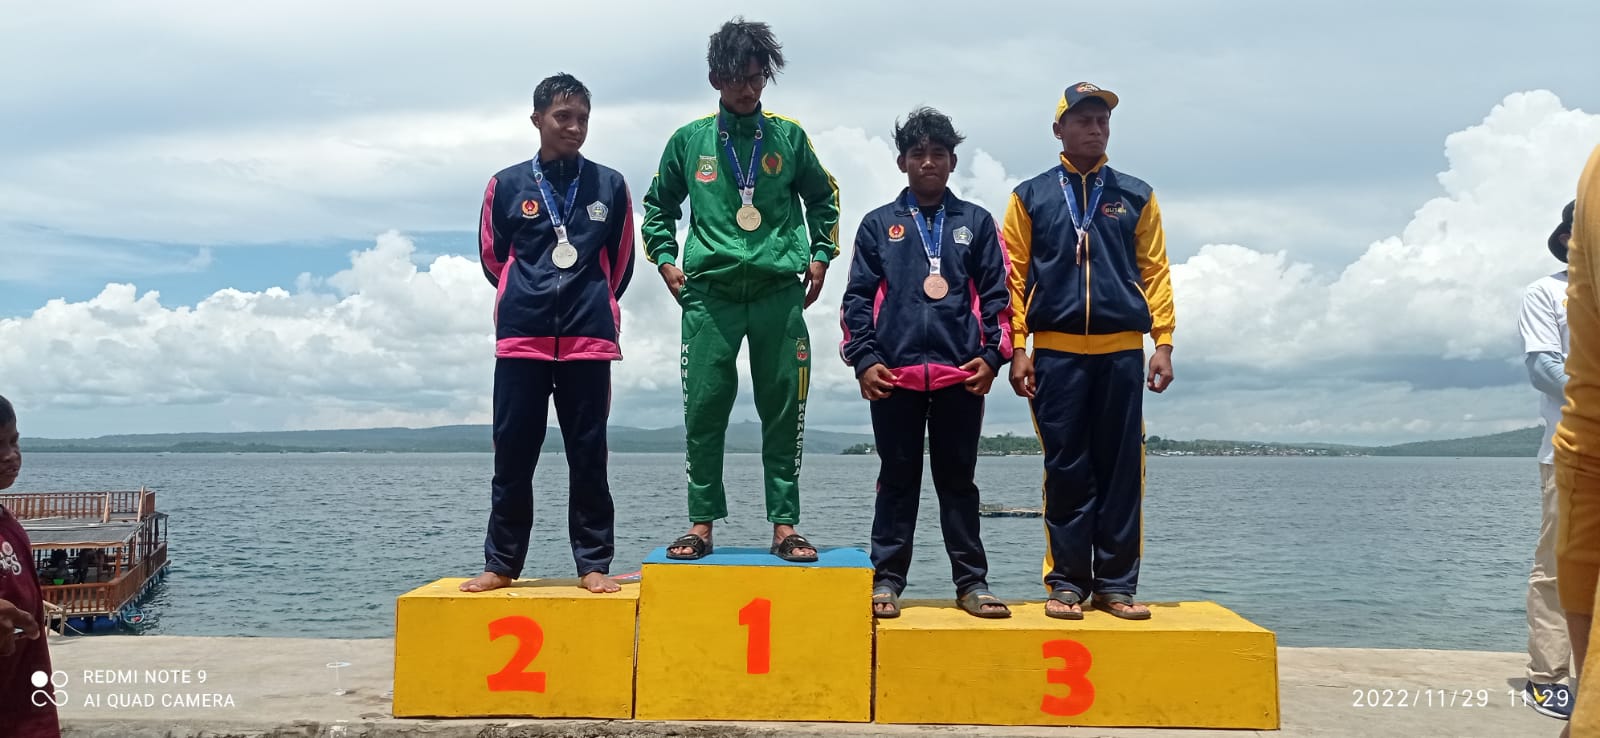 Konawe Utara (Konut) berhasil menyabet tiga medali emas pada Cabor Selam Putra (_Finswimming_) di Porprov XIV Sultra 2022 yang diselenggarakan di Kota Baubau, Selasa (29/11). (Foto Asmar)